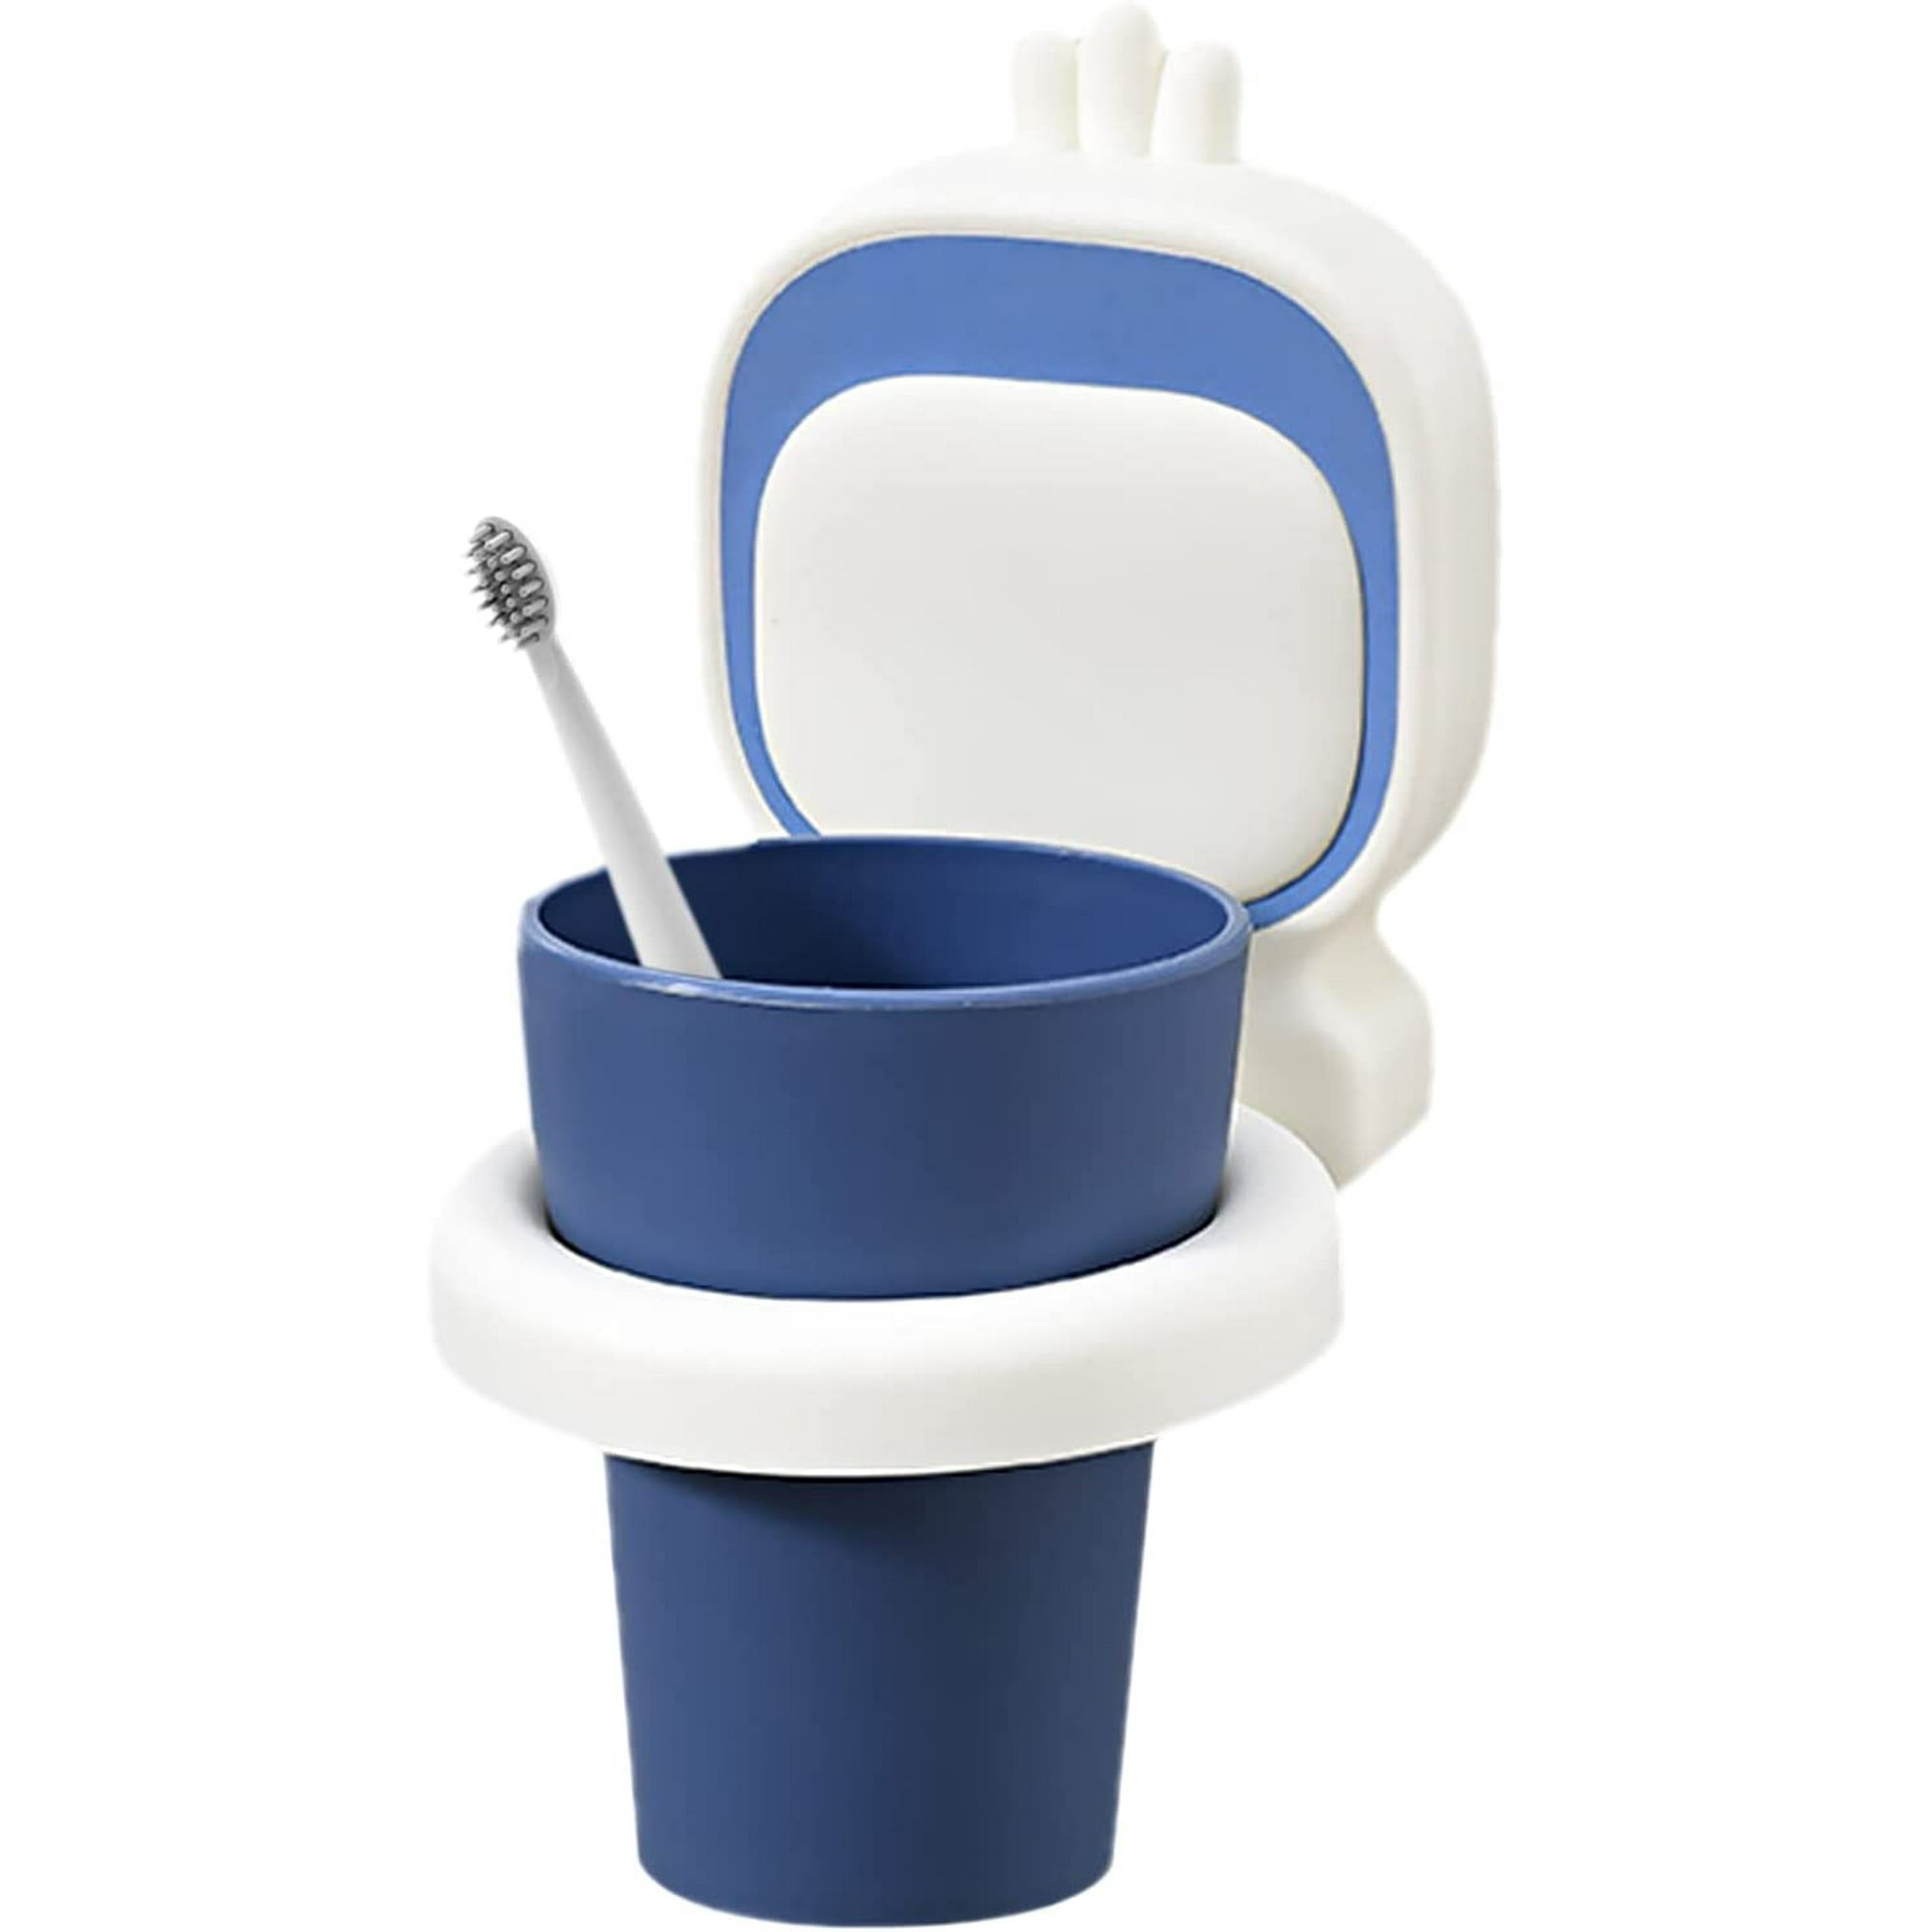 Cepillo de dientes, vaso de baño, vaso de cepillo de dientes para niños,  con portavasos, no requiere perforación, para baño, inodoro (azul)